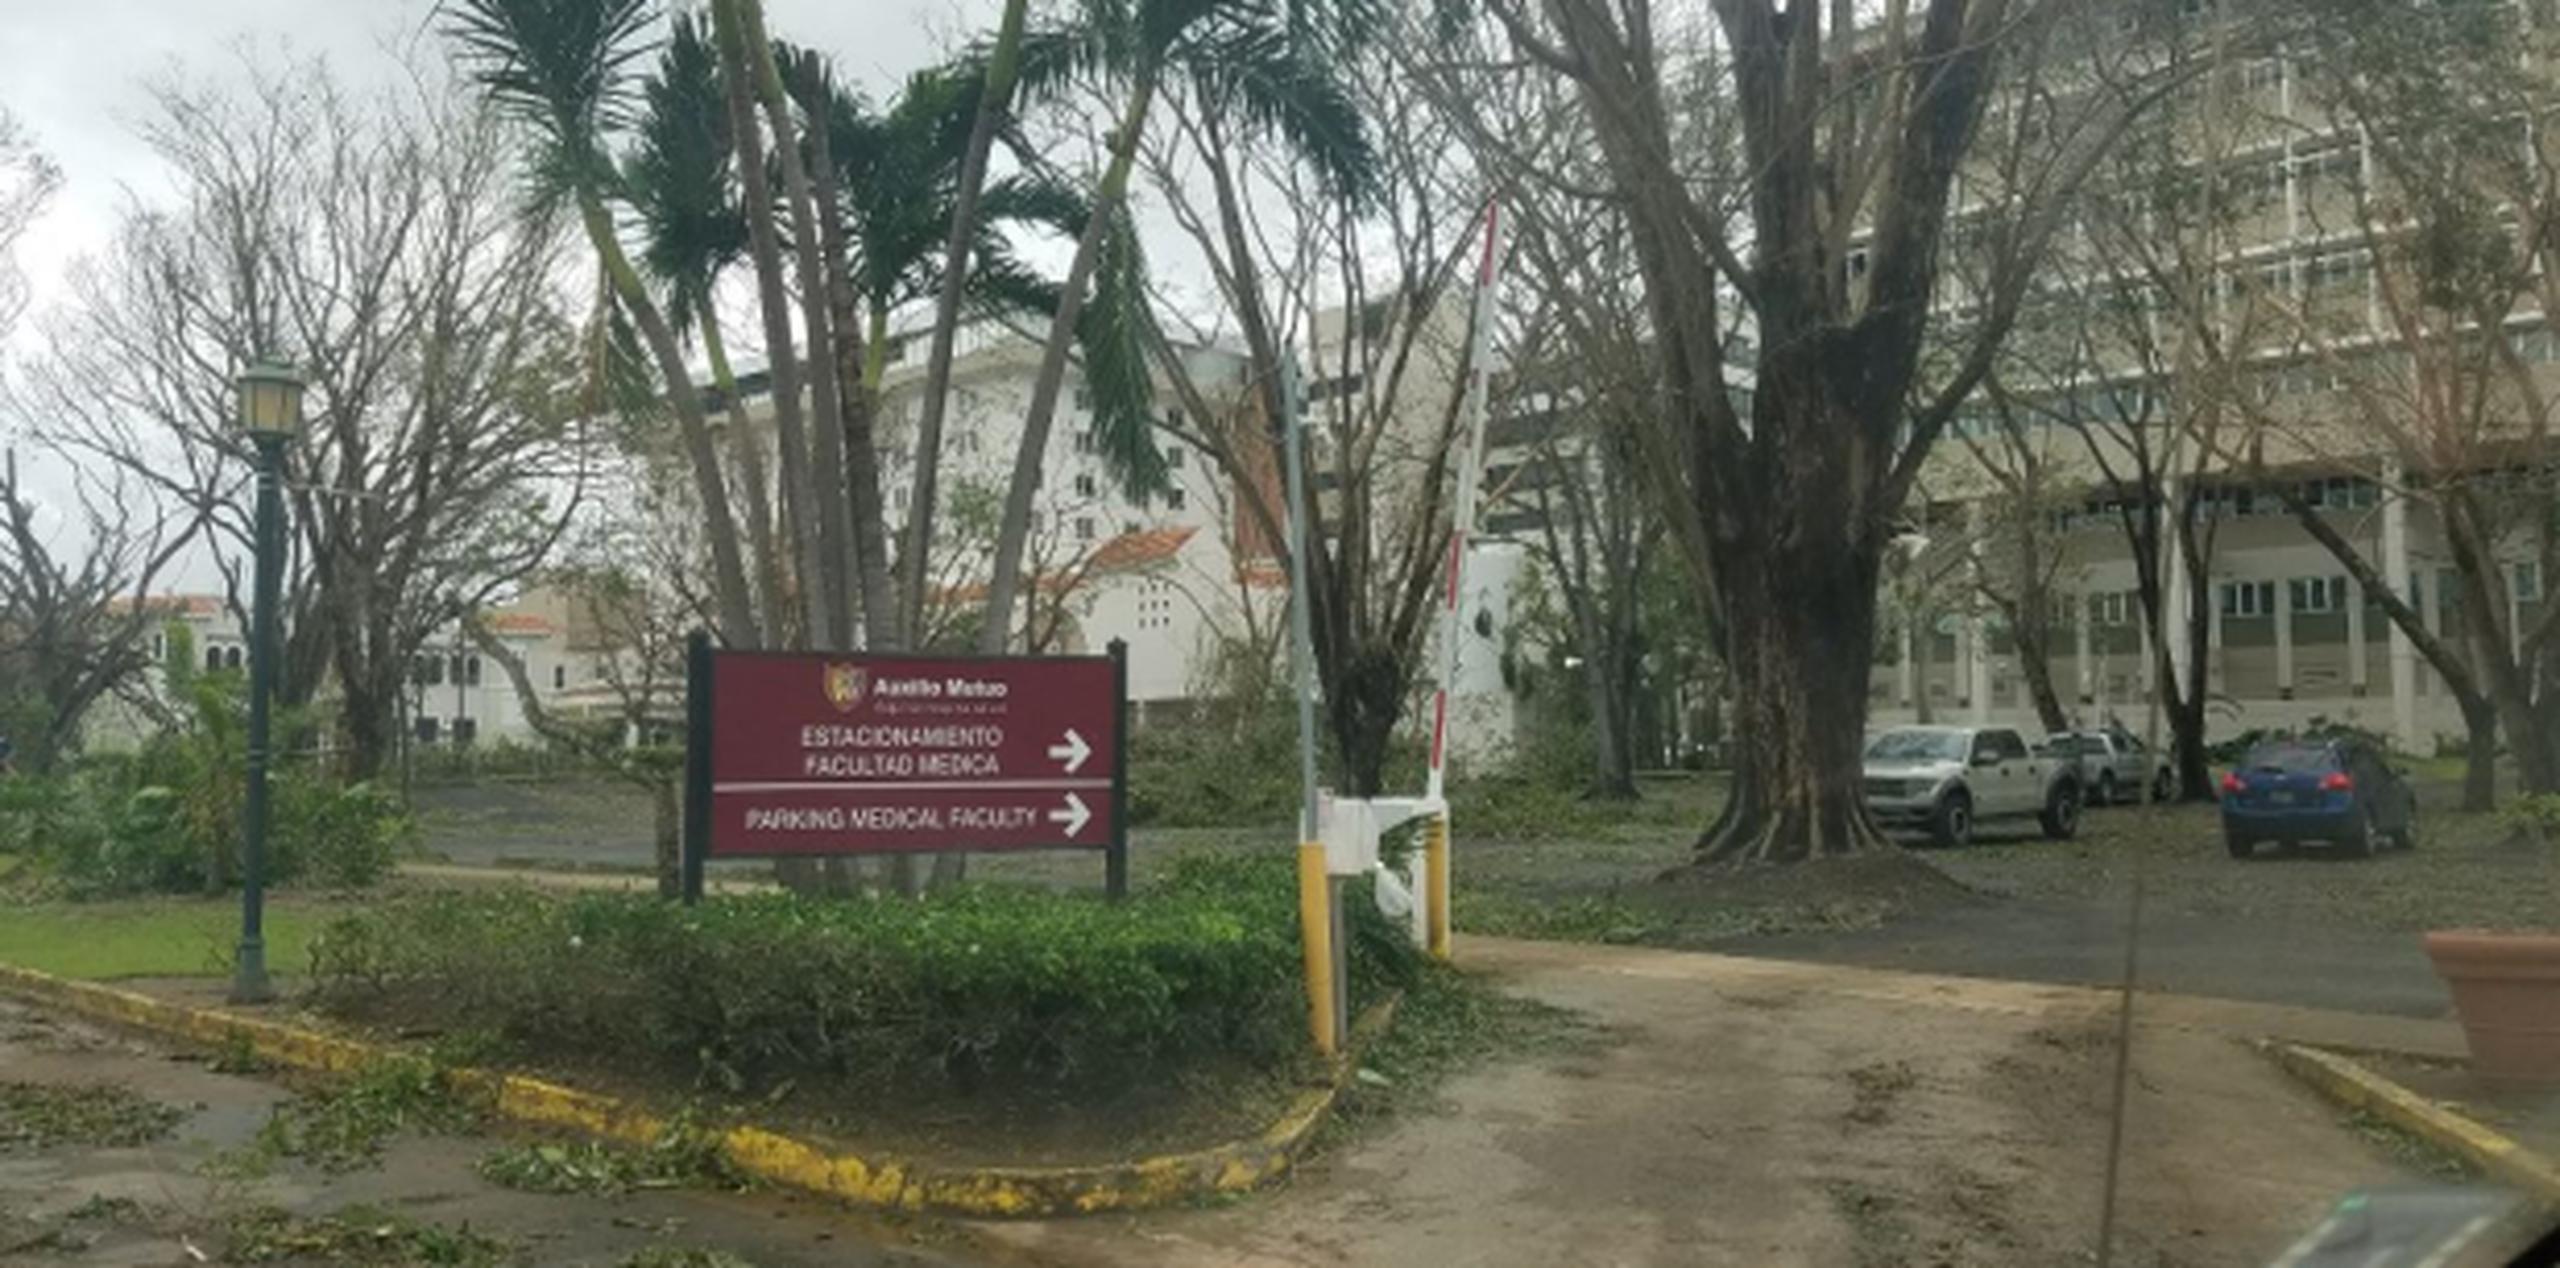 El hospital ha recibido el impacto del huracán “de una forma significativa”. (libni.sanjurjo@gfrmedia.com)